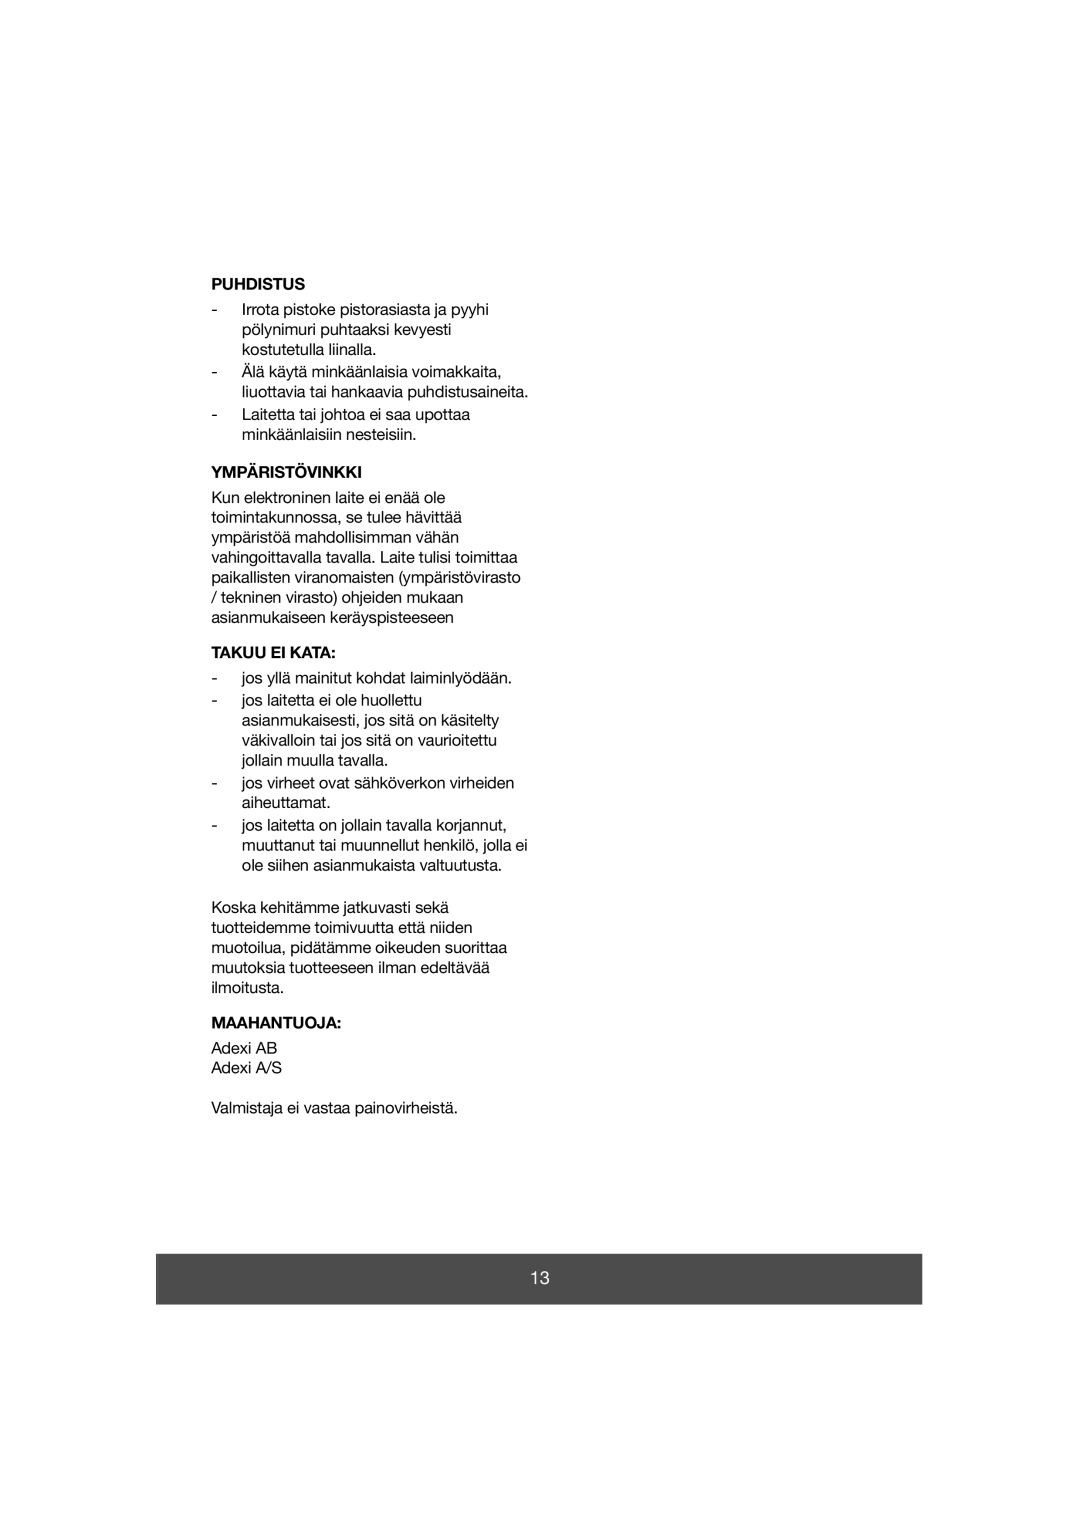 Melissa 640-038 manual Puhdistus, Ympäristövinkki, Takuu Ei Kata, Maahantuoja 